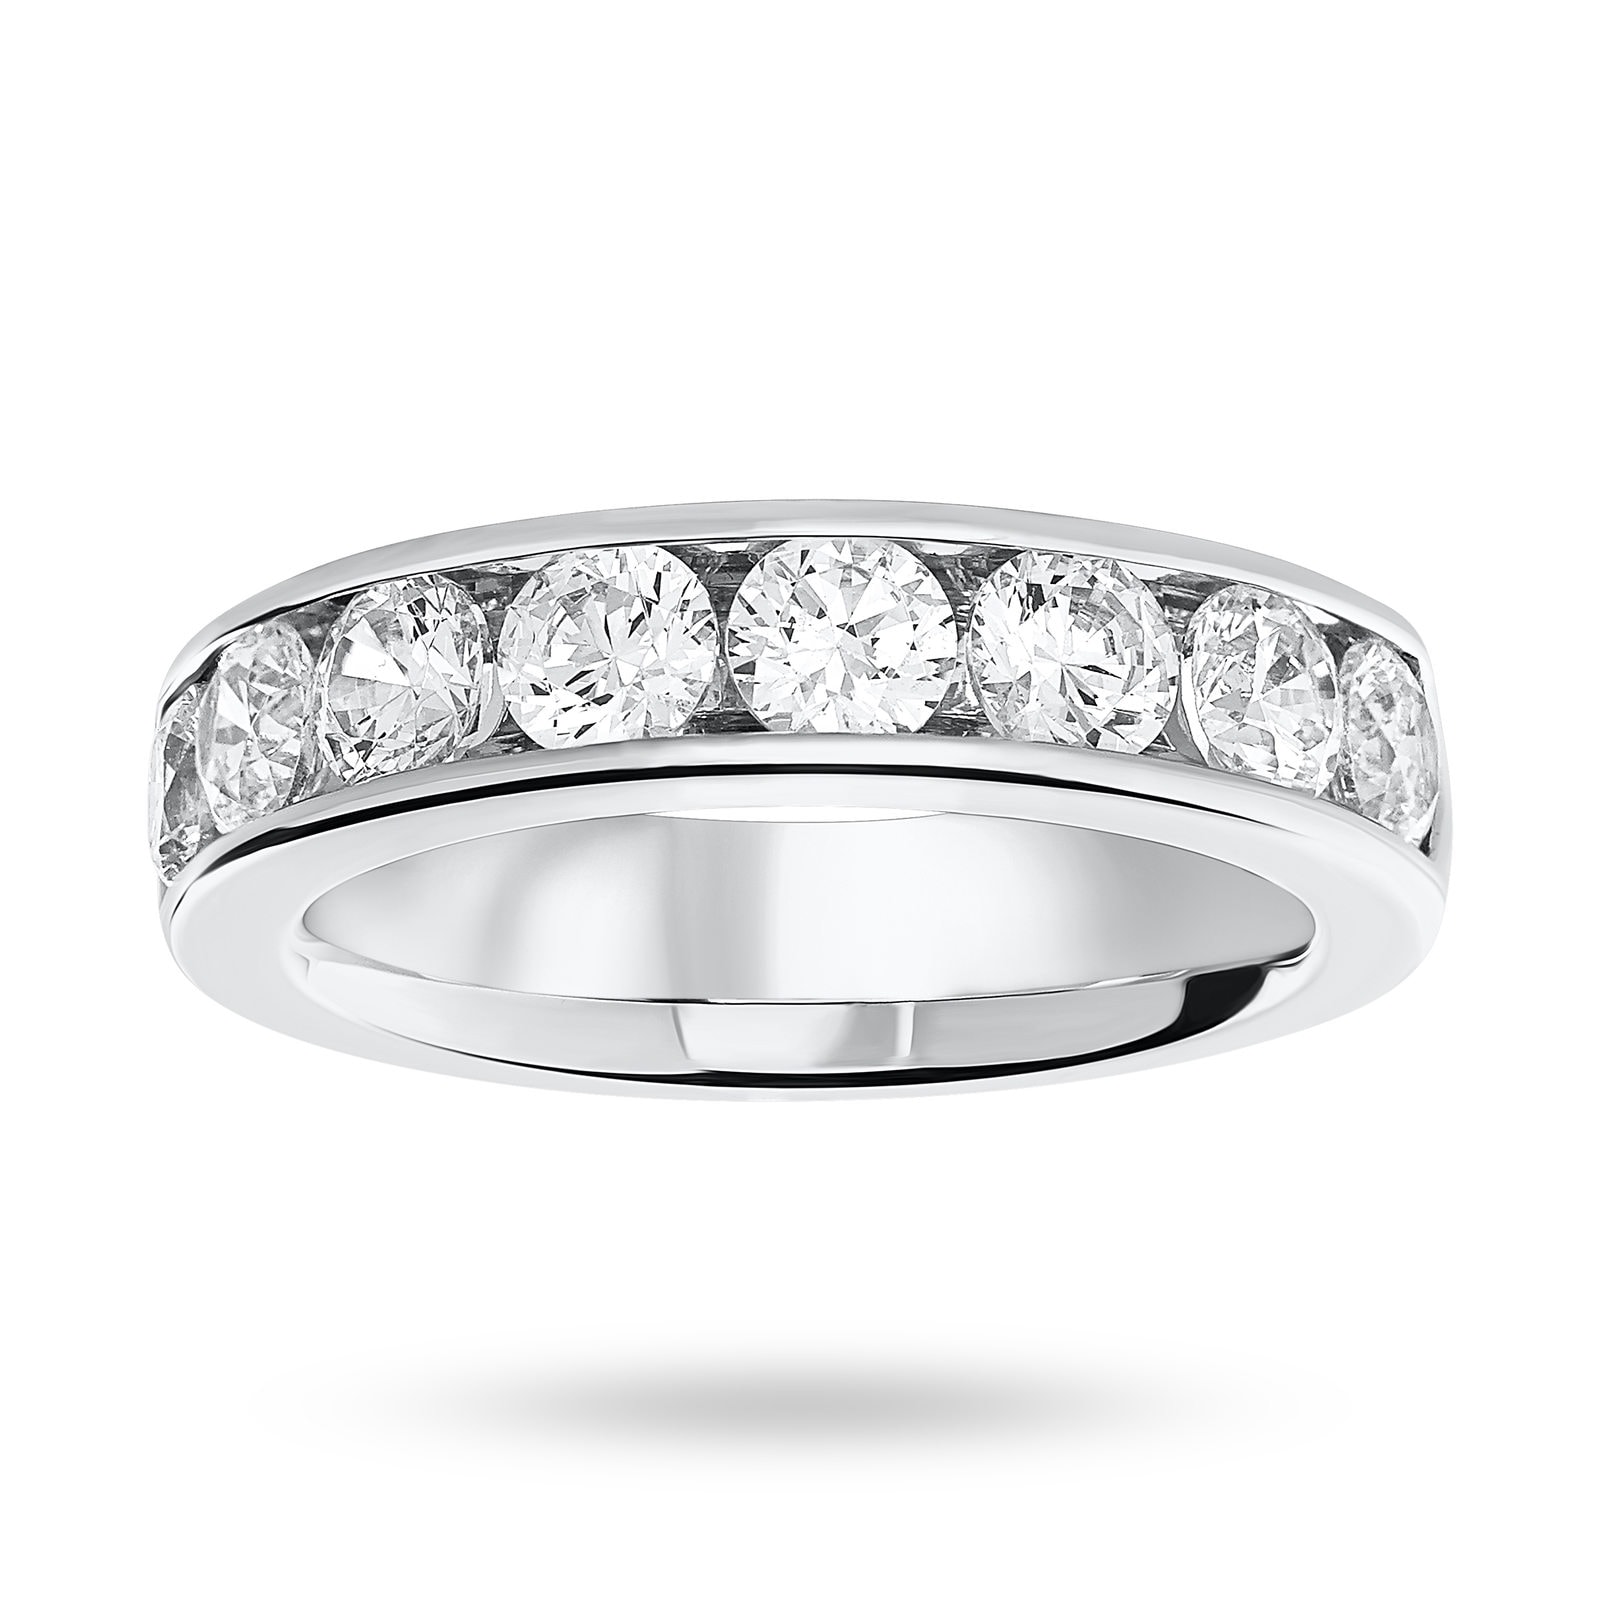 Platinum 1.85 Carat Brilliant Cut Half Eternity Ring - Ring Size J